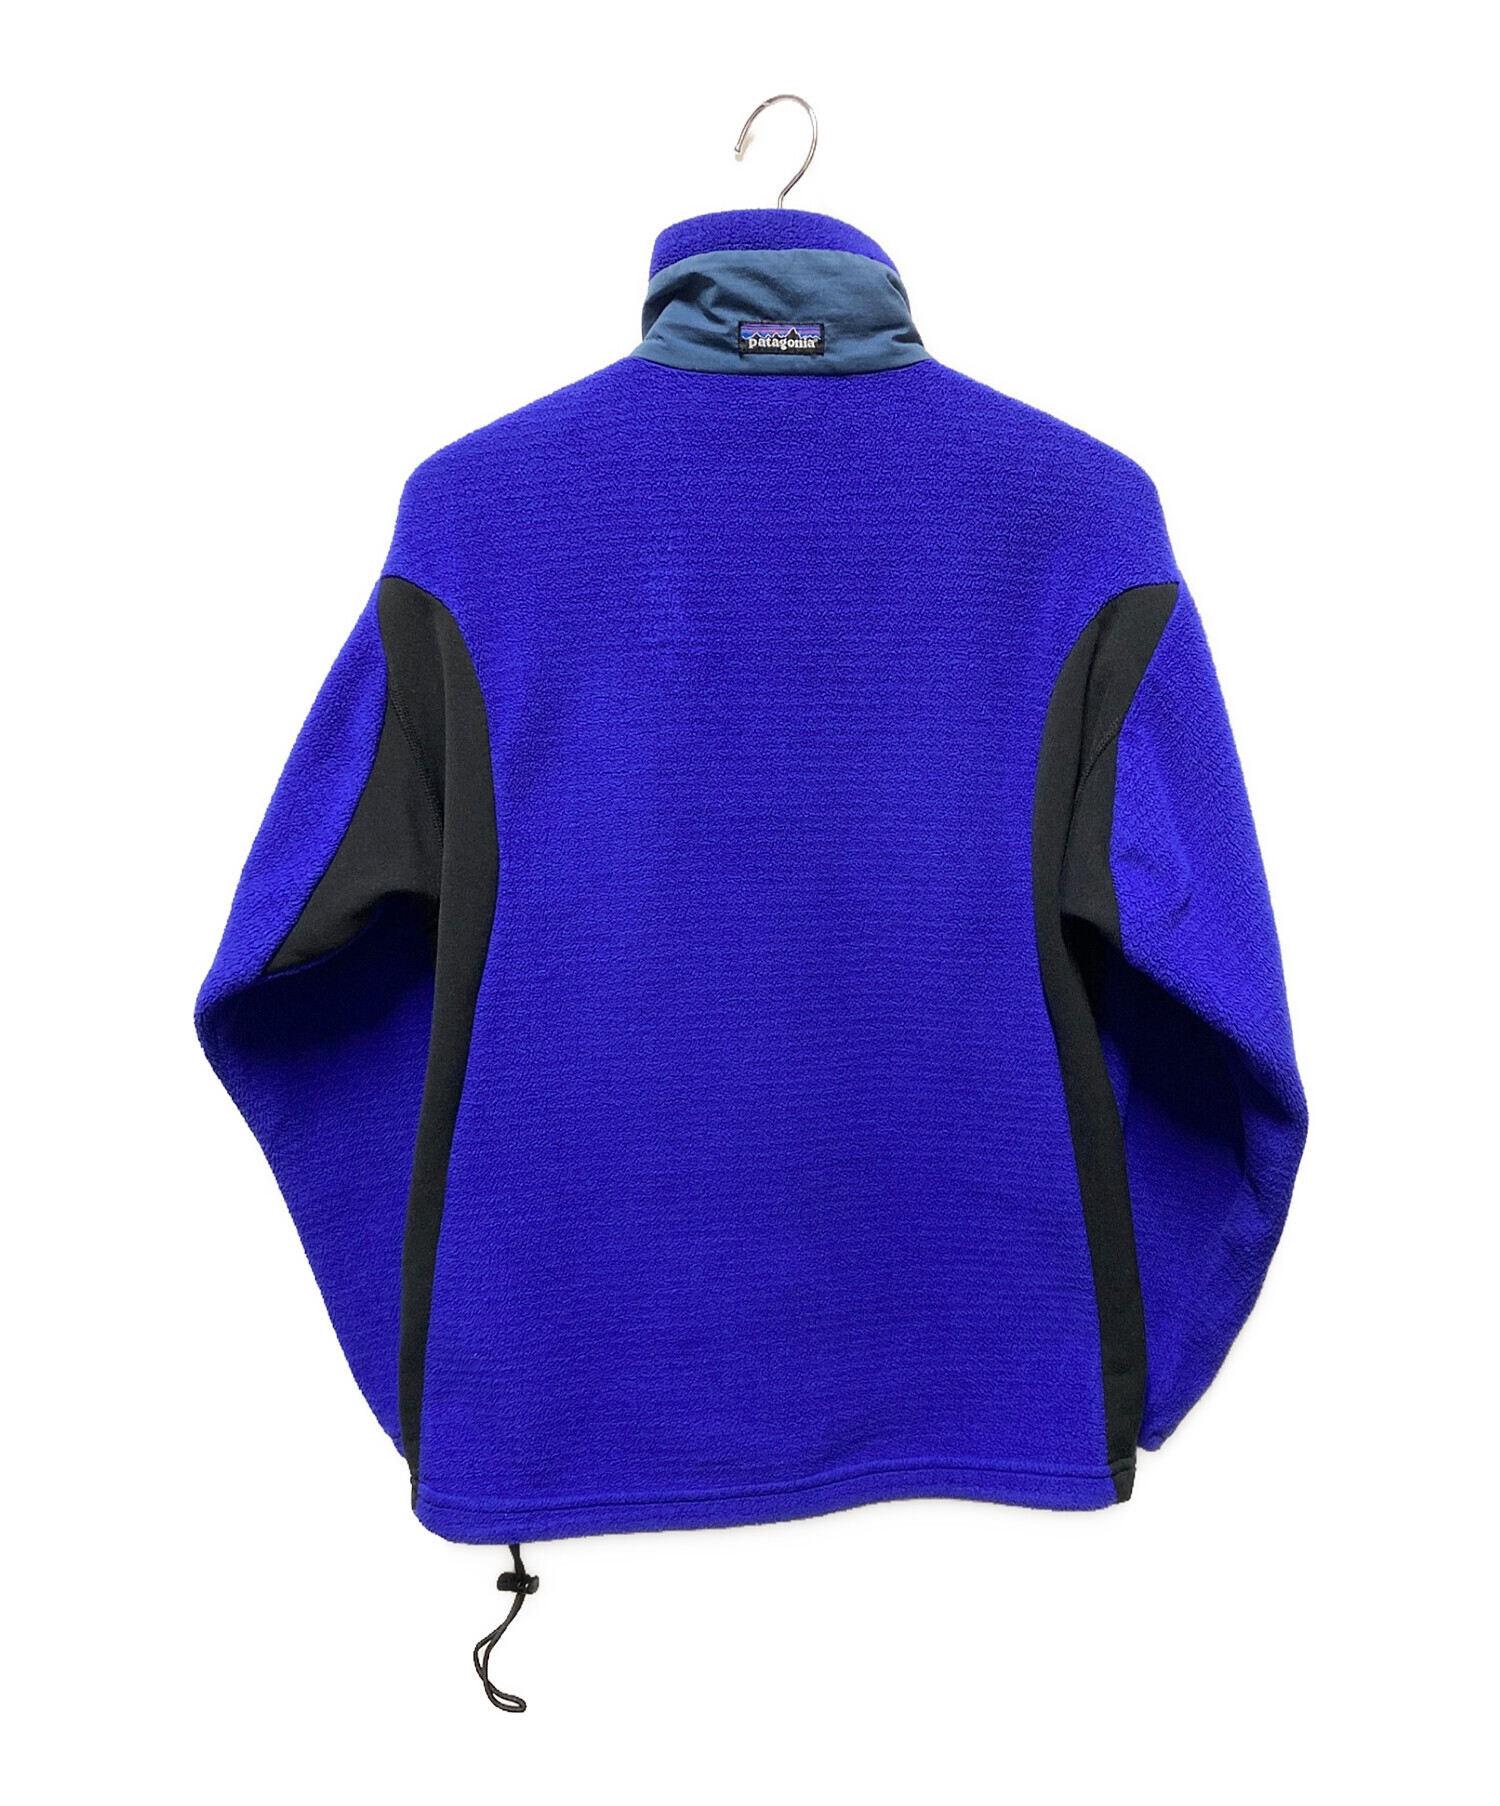 Patagonia (パタゴニア) レギュレーターR3フリースジャケット ブルー サイズ:S